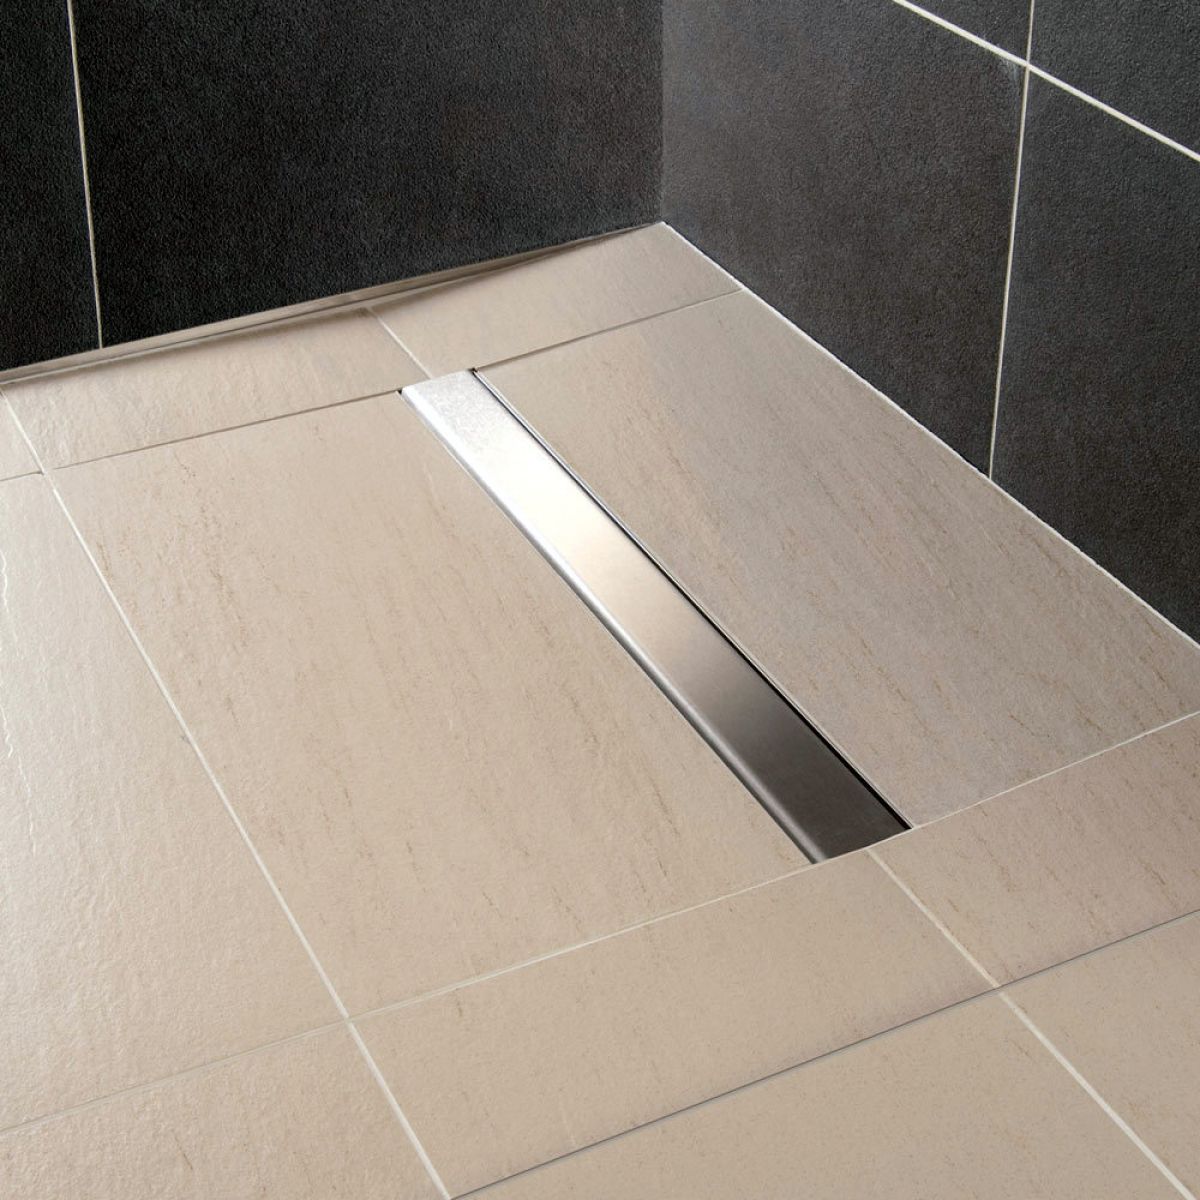 Impey Aqua-Dec Linear 2 Wetroom System